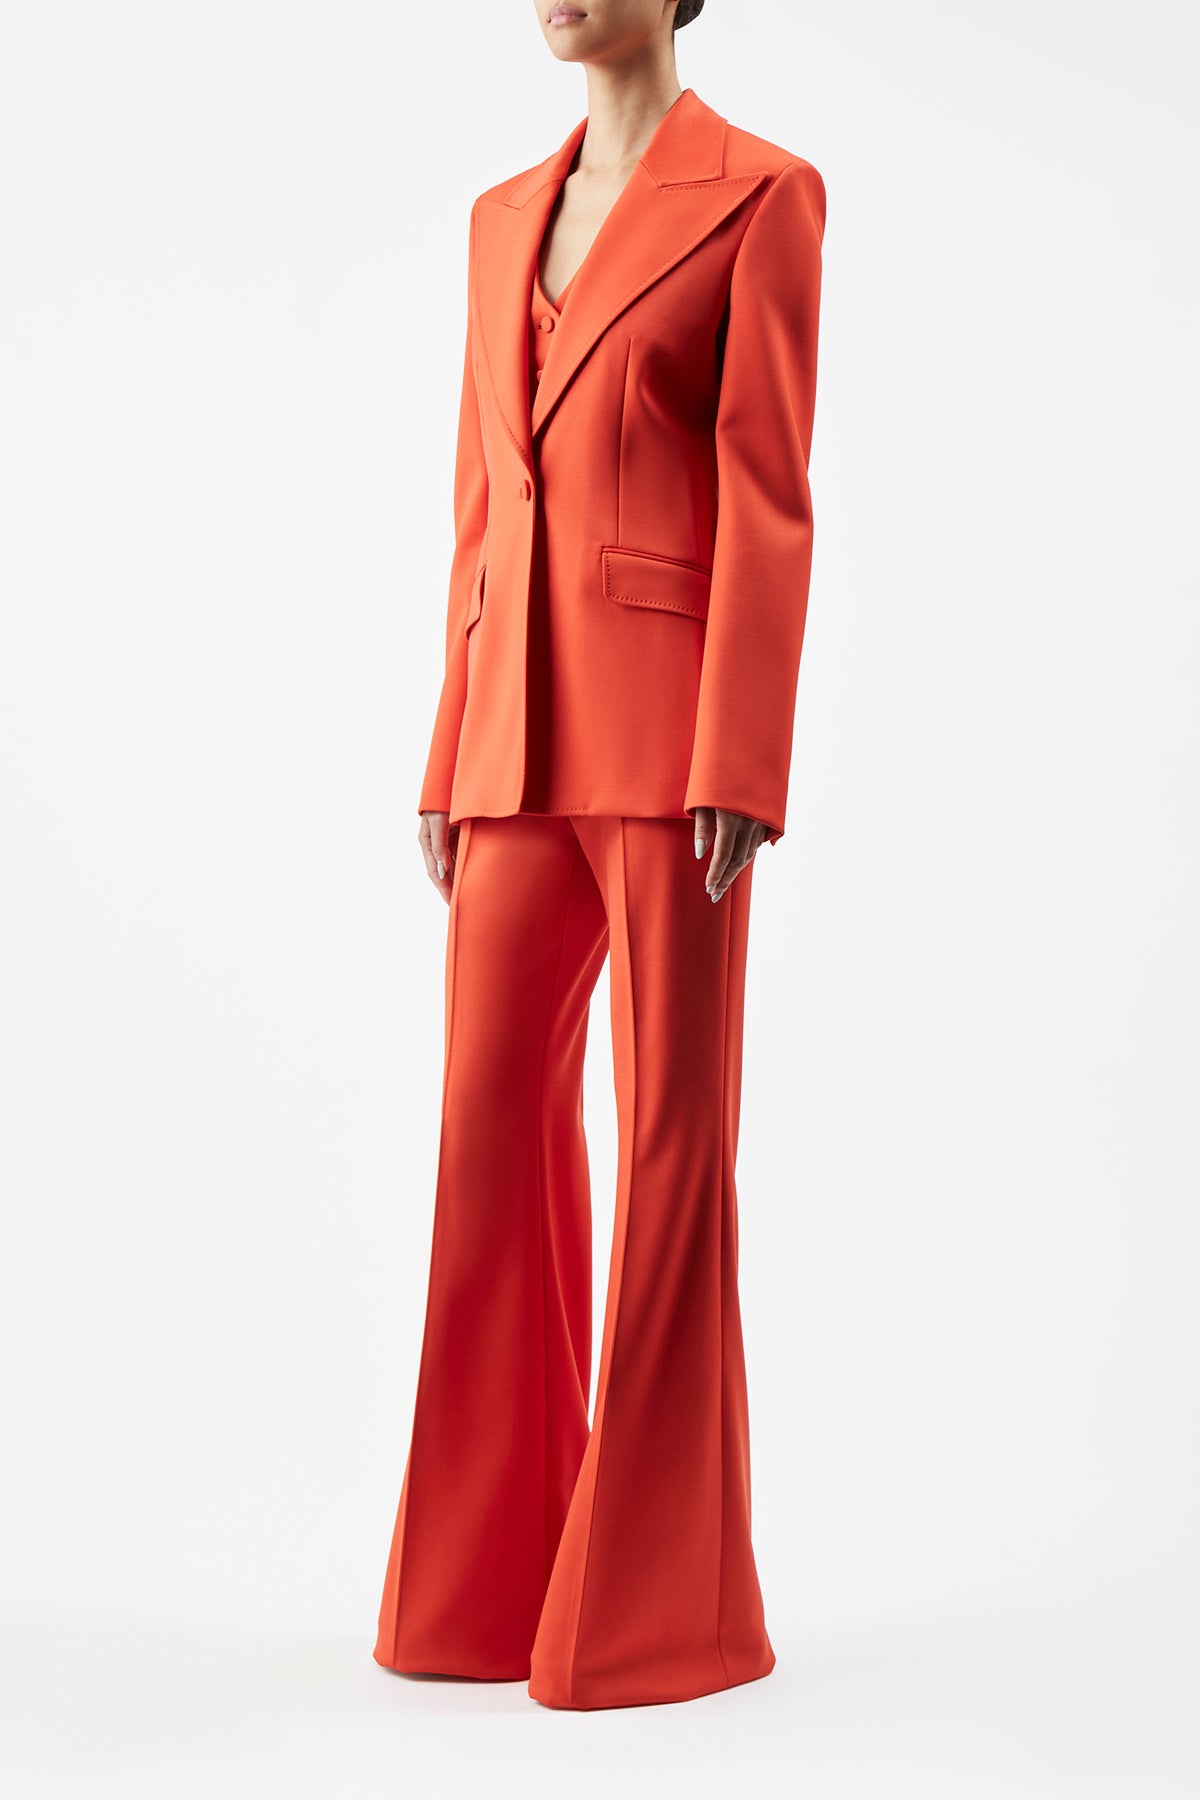 Leiva Blazer in Tonic Orange Sportswear Wool